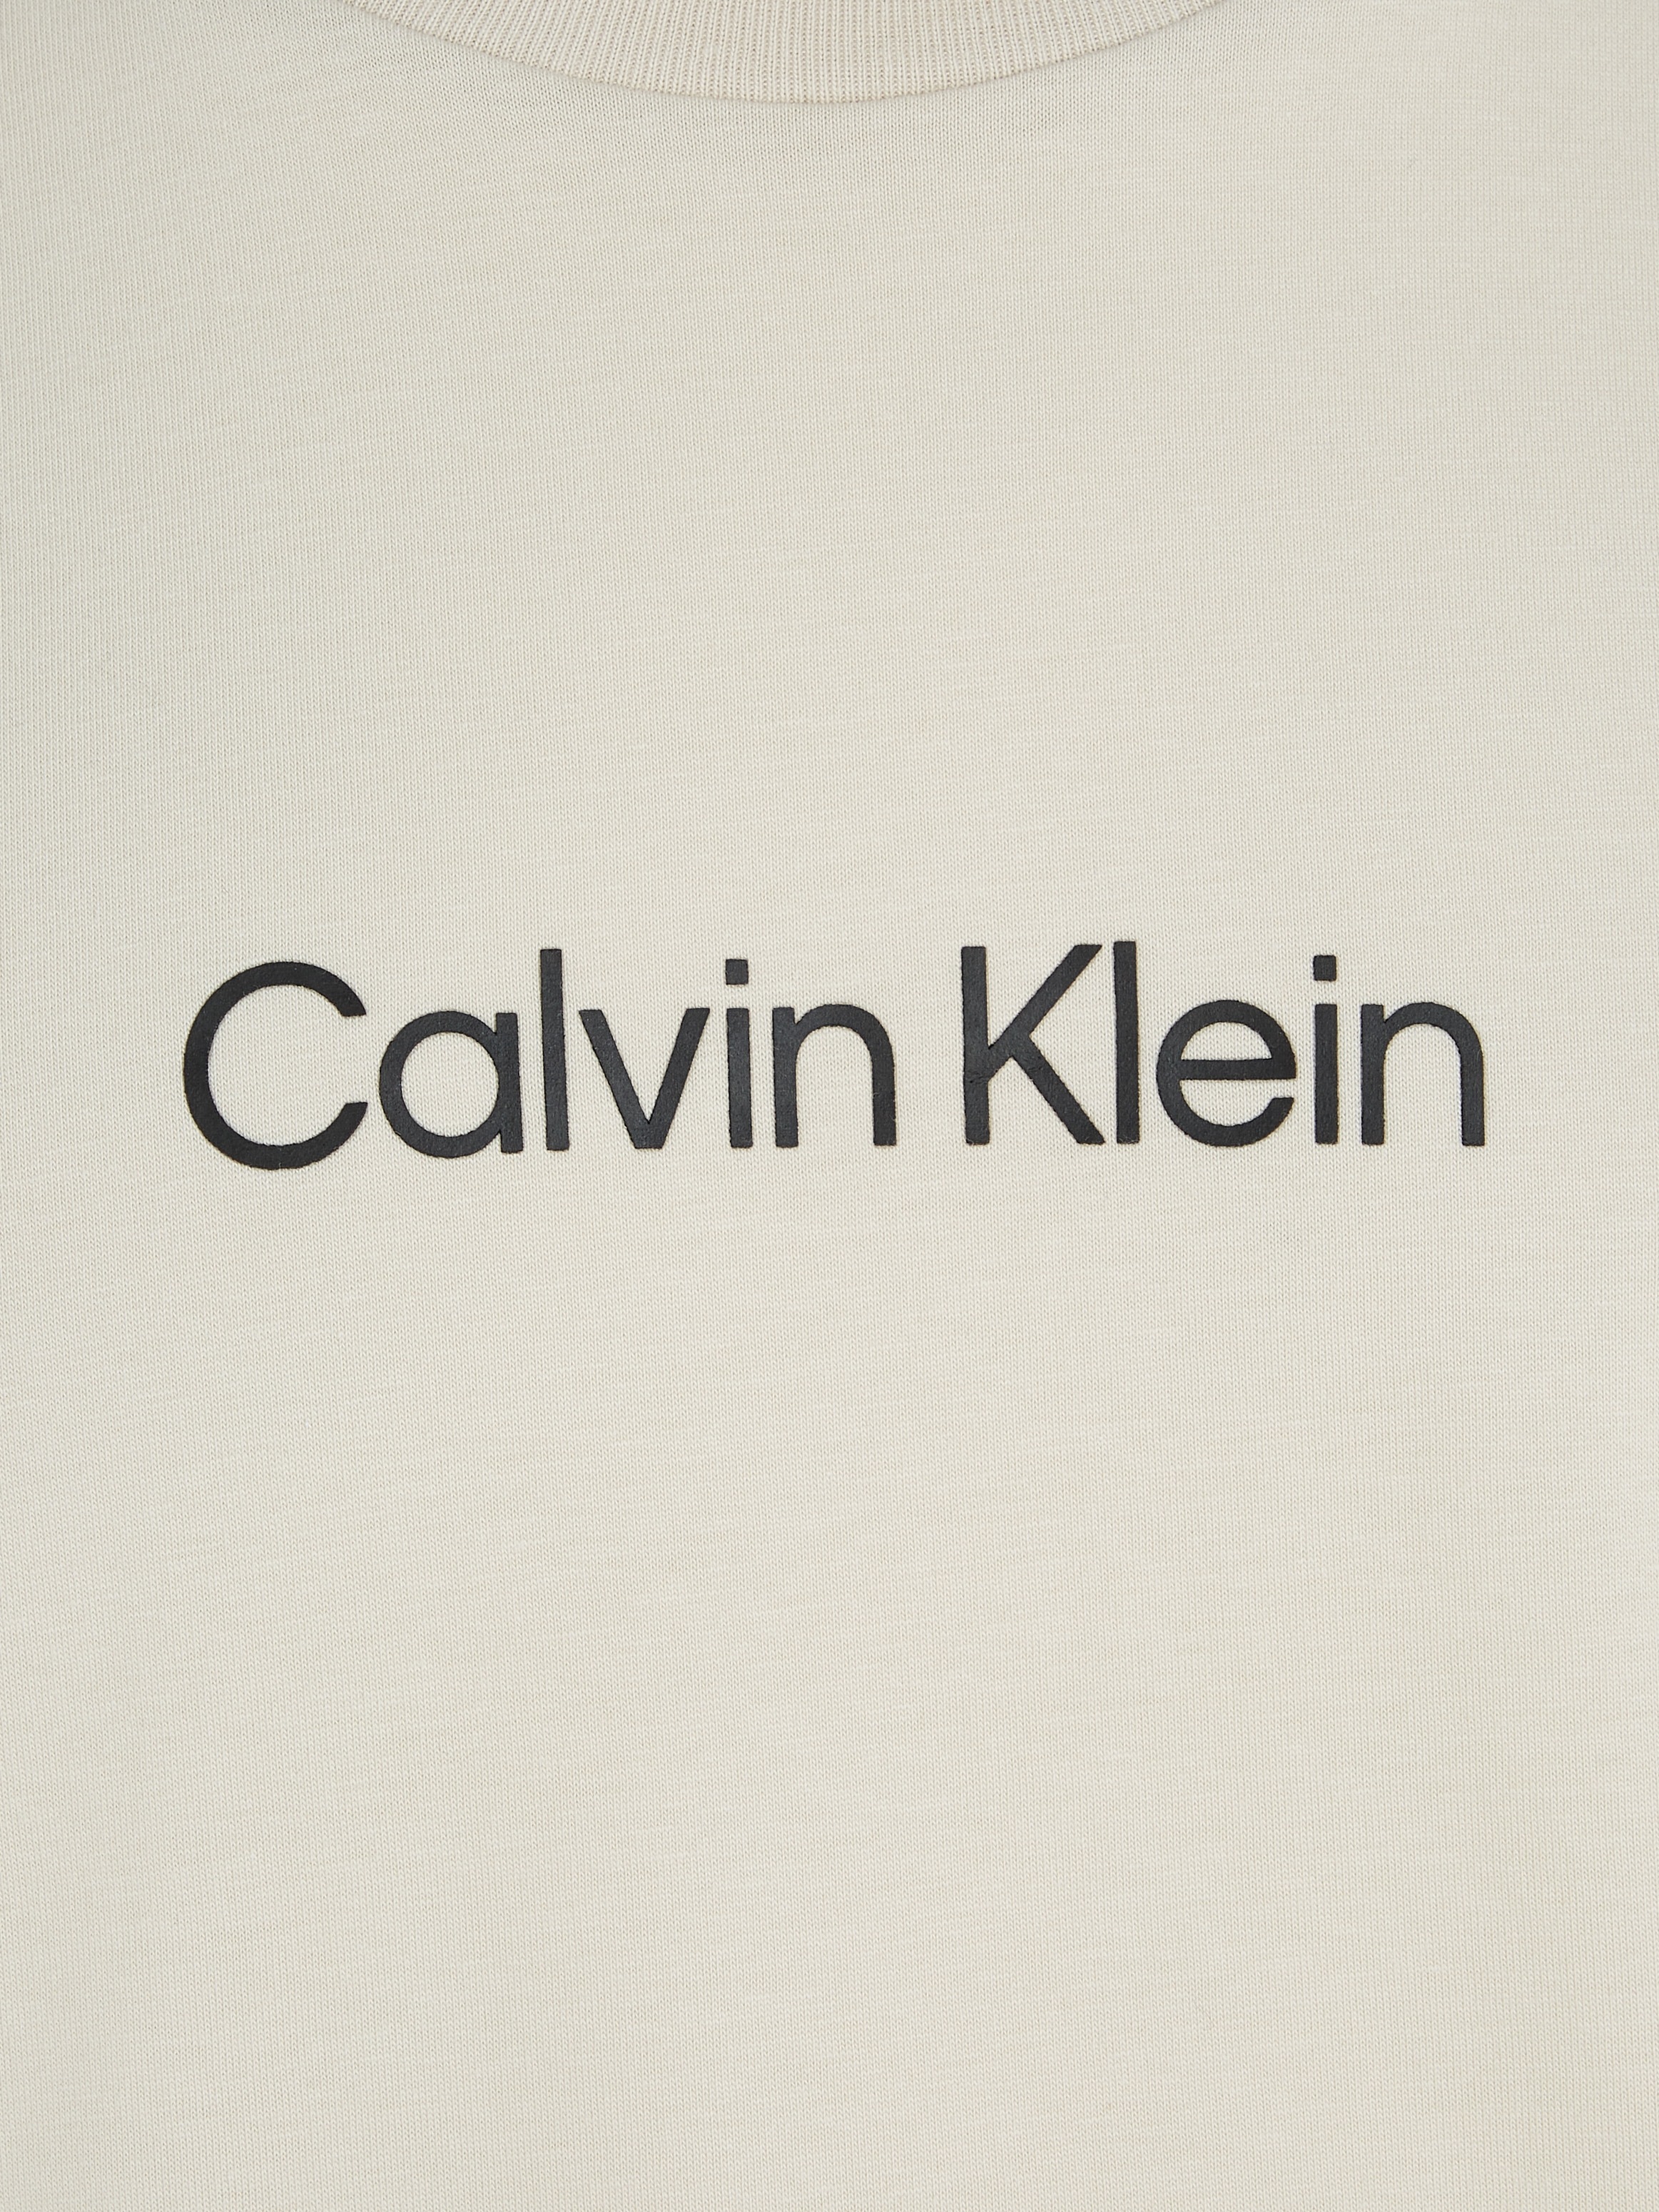 aufgedrucktem ♕ T-SHIRT«, Markenlabel »HERO mit bei LOGO COMFORT Klein T-Shirt Calvin